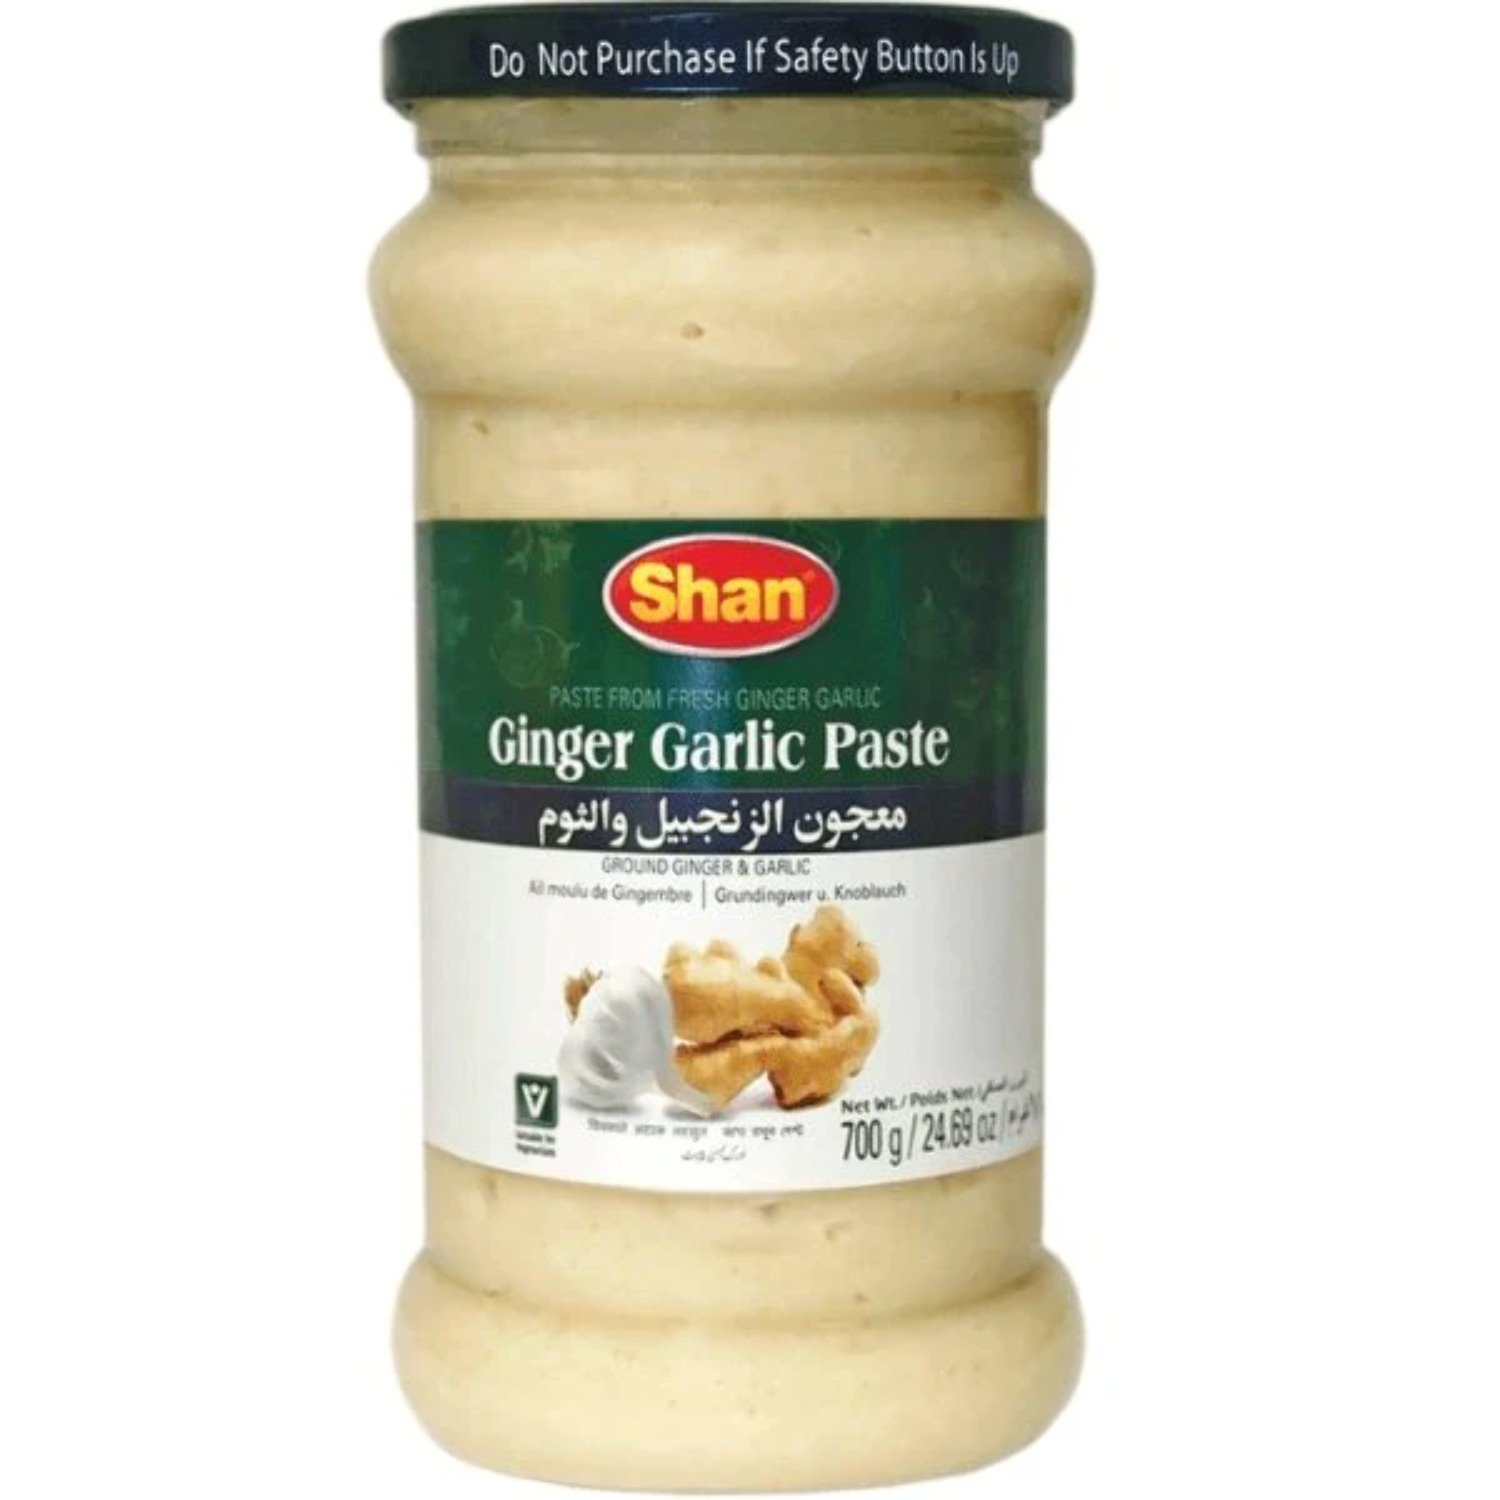 Shan Garlic Paste 700g (24.69oz) - image 1 of 2